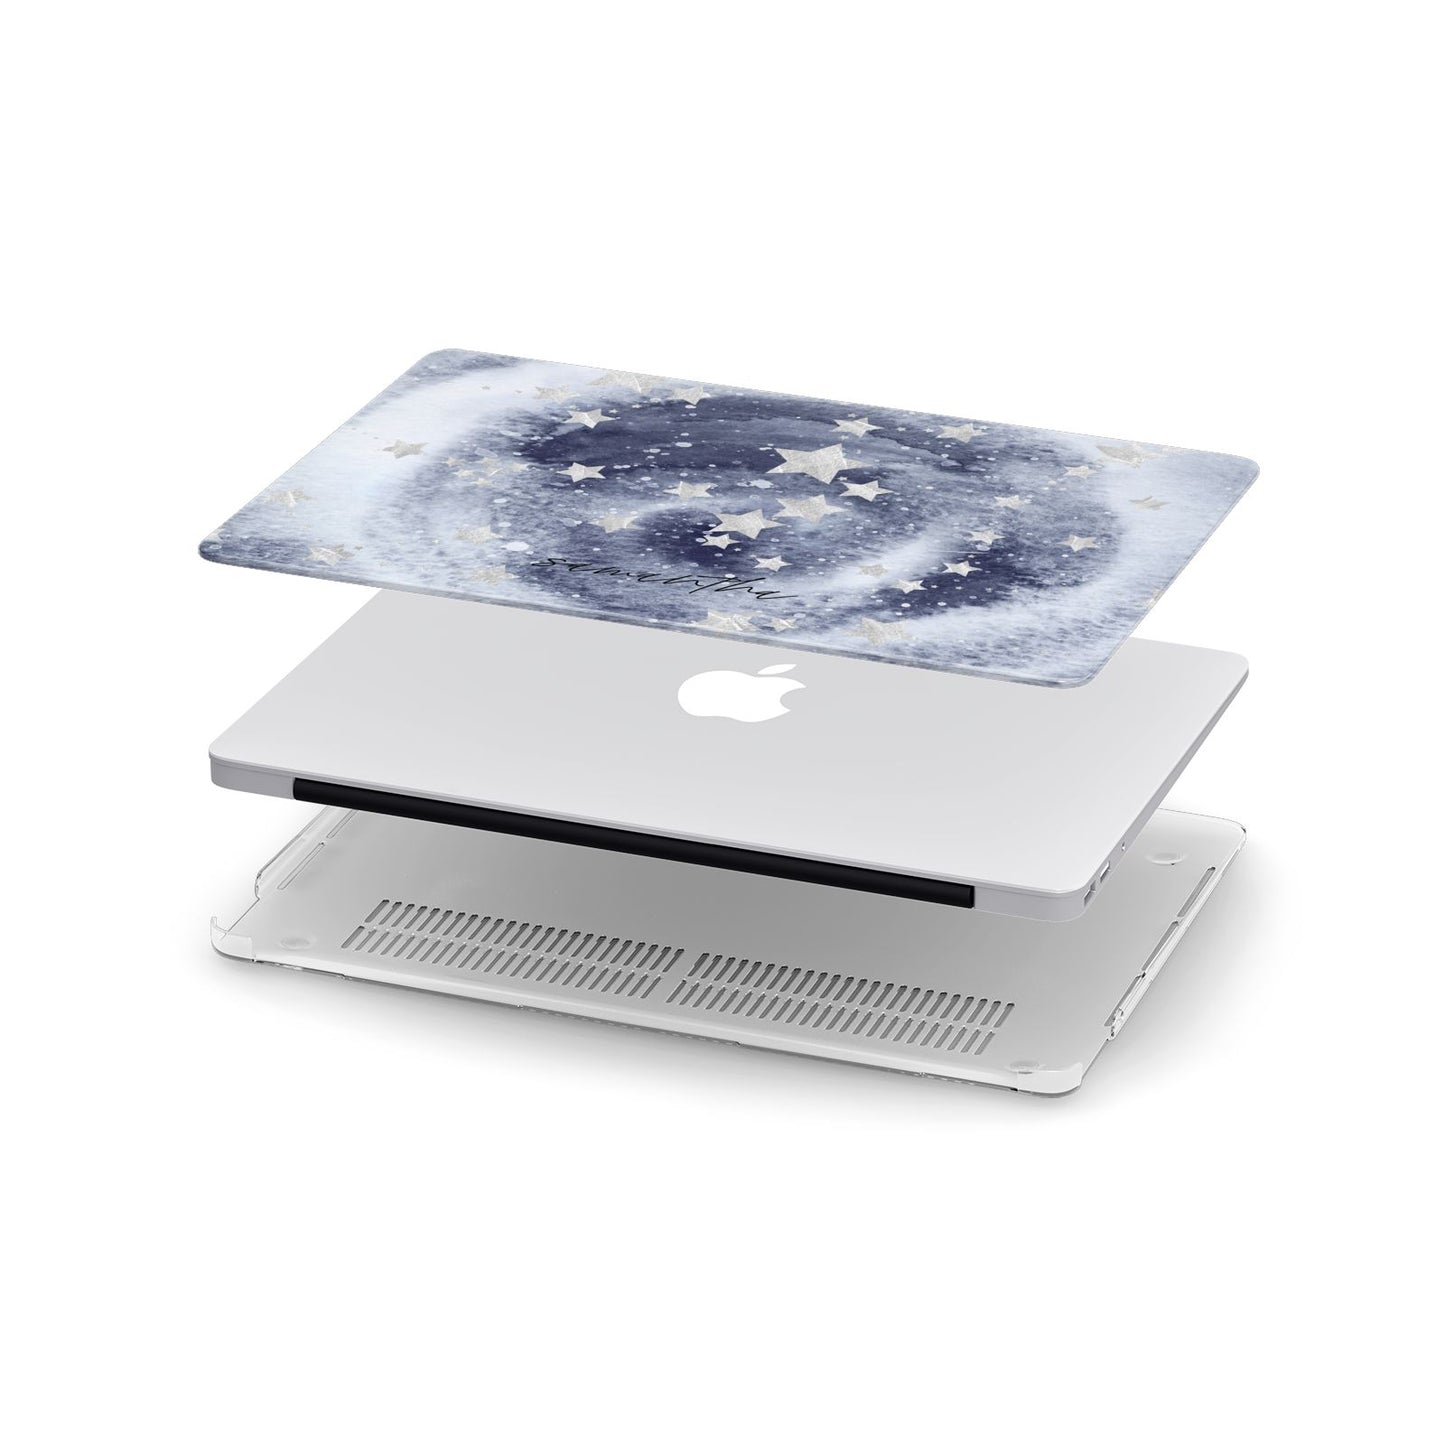 Personalised Space Apple MacBook Case in Detail